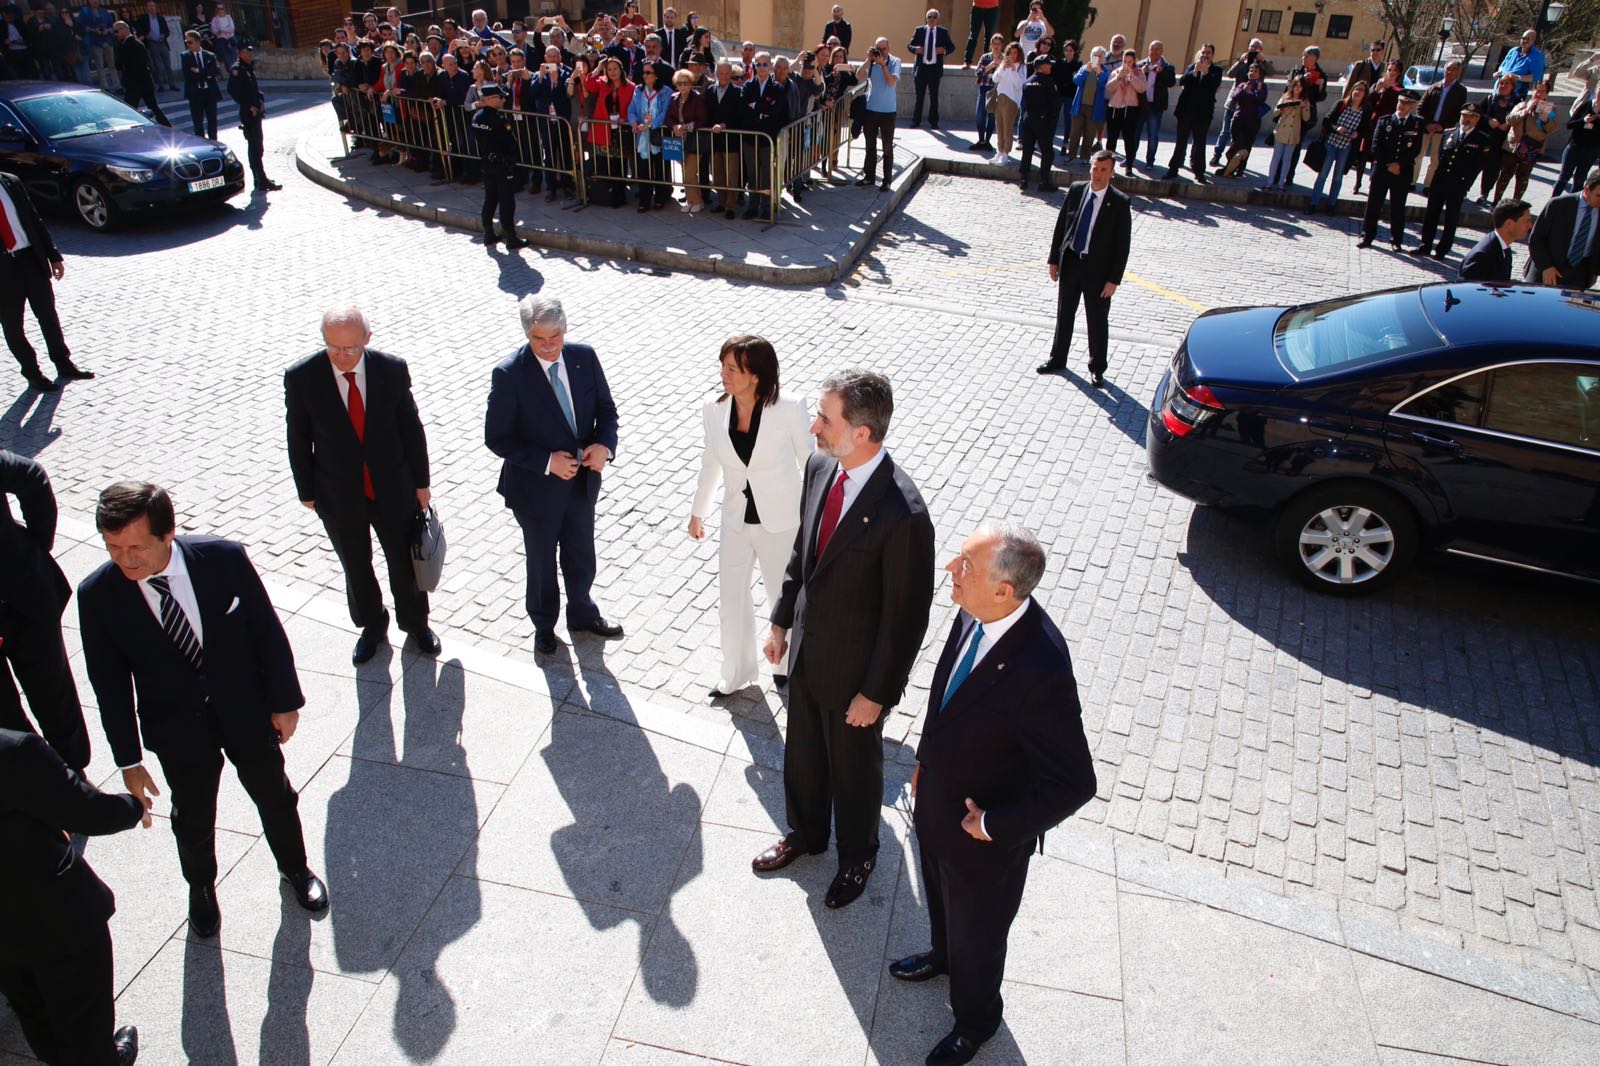 El presidente del Portugal, Marcelo Rebelo de Sousa, concluye en Salamanca su visita de Estado de tres días a España con un acto en el paraninfo de la Universidad más antigua del país en compañía de Felipe VI.